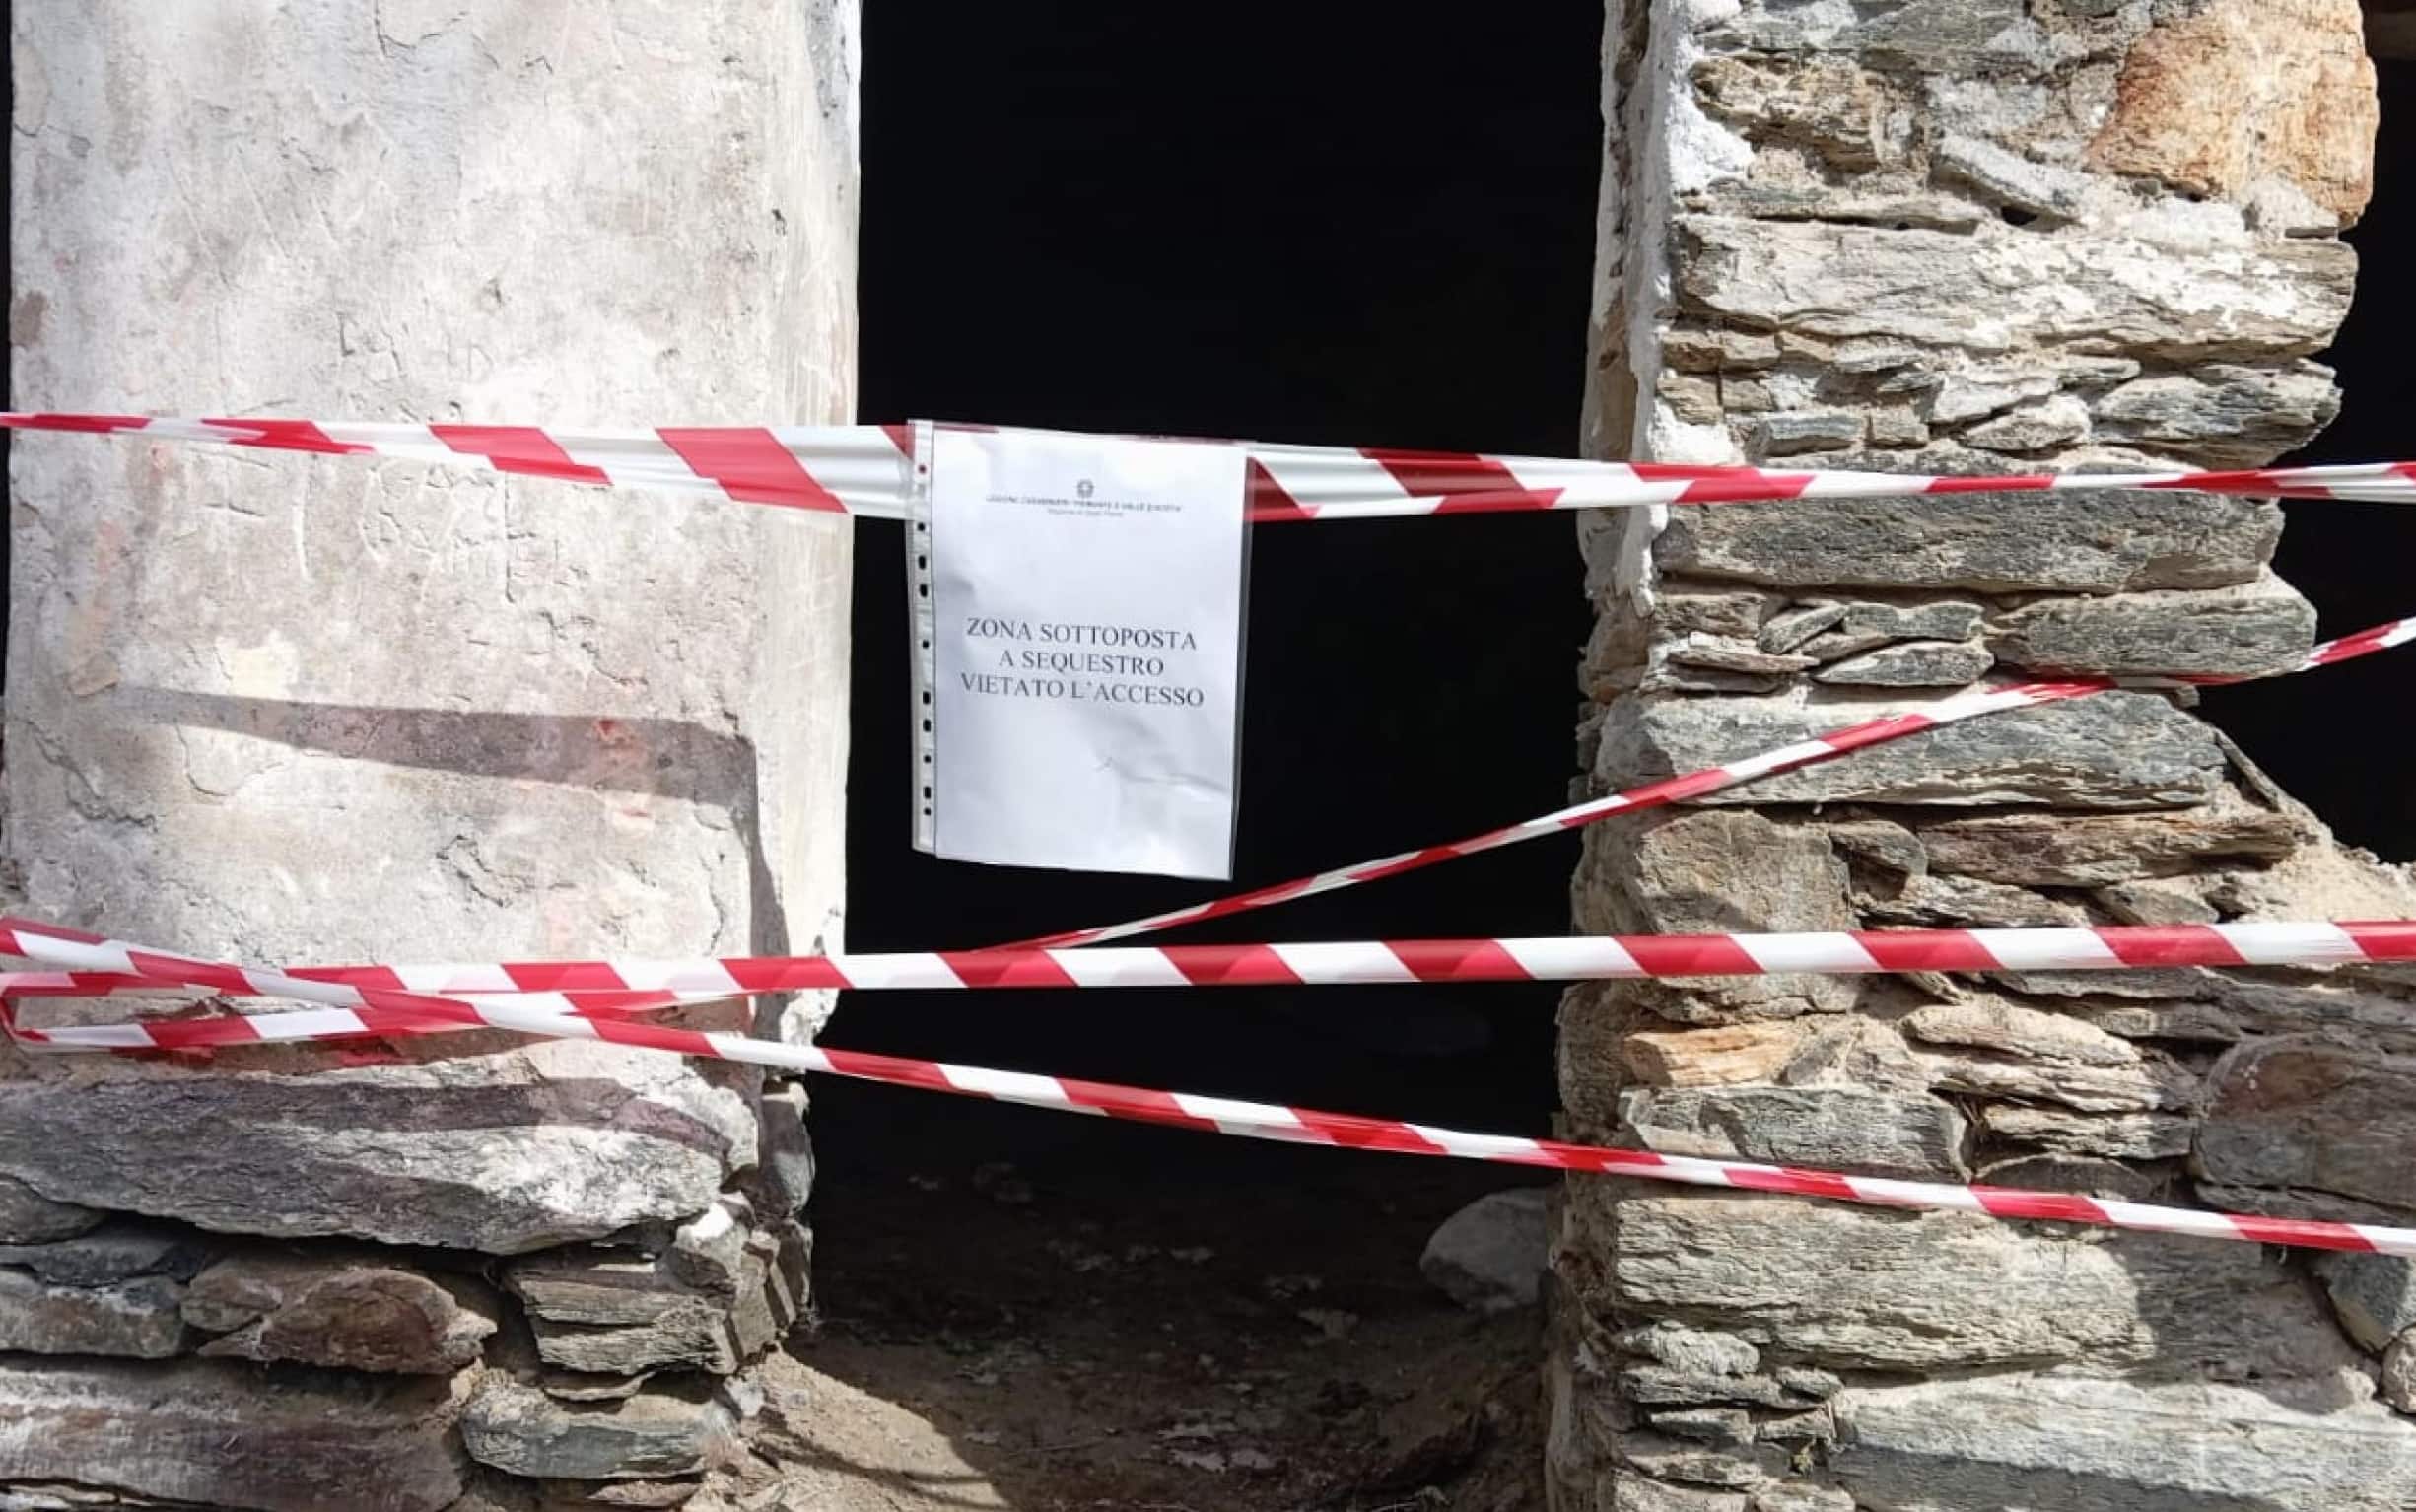 Ragazza uccisa vicino ad Aosta: ipotesi di un challenge su TikTok